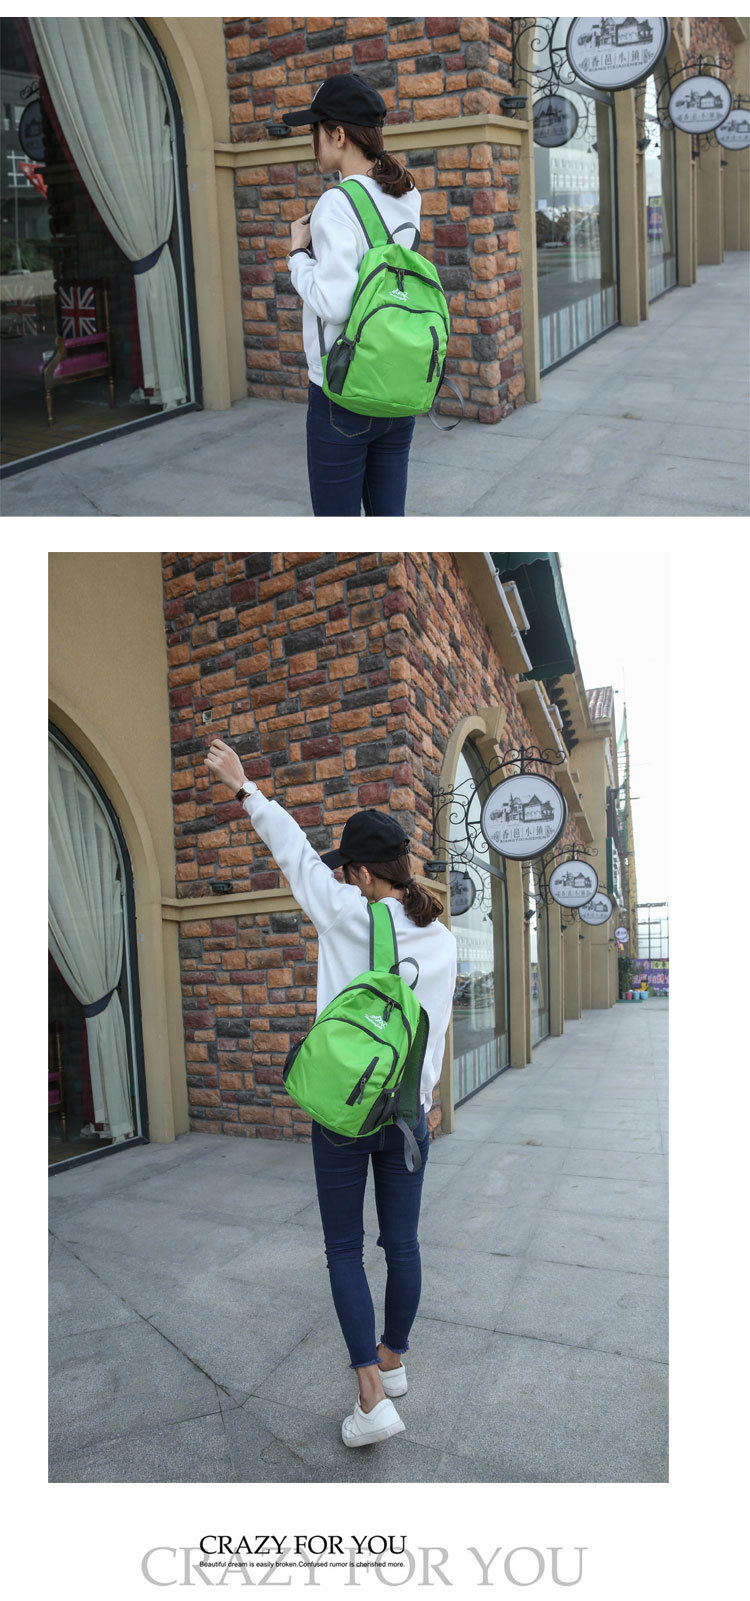 韩版防水超轻皮肤包旅行可折叠双肩包多功能便携户外运动学生背包518 JFBB